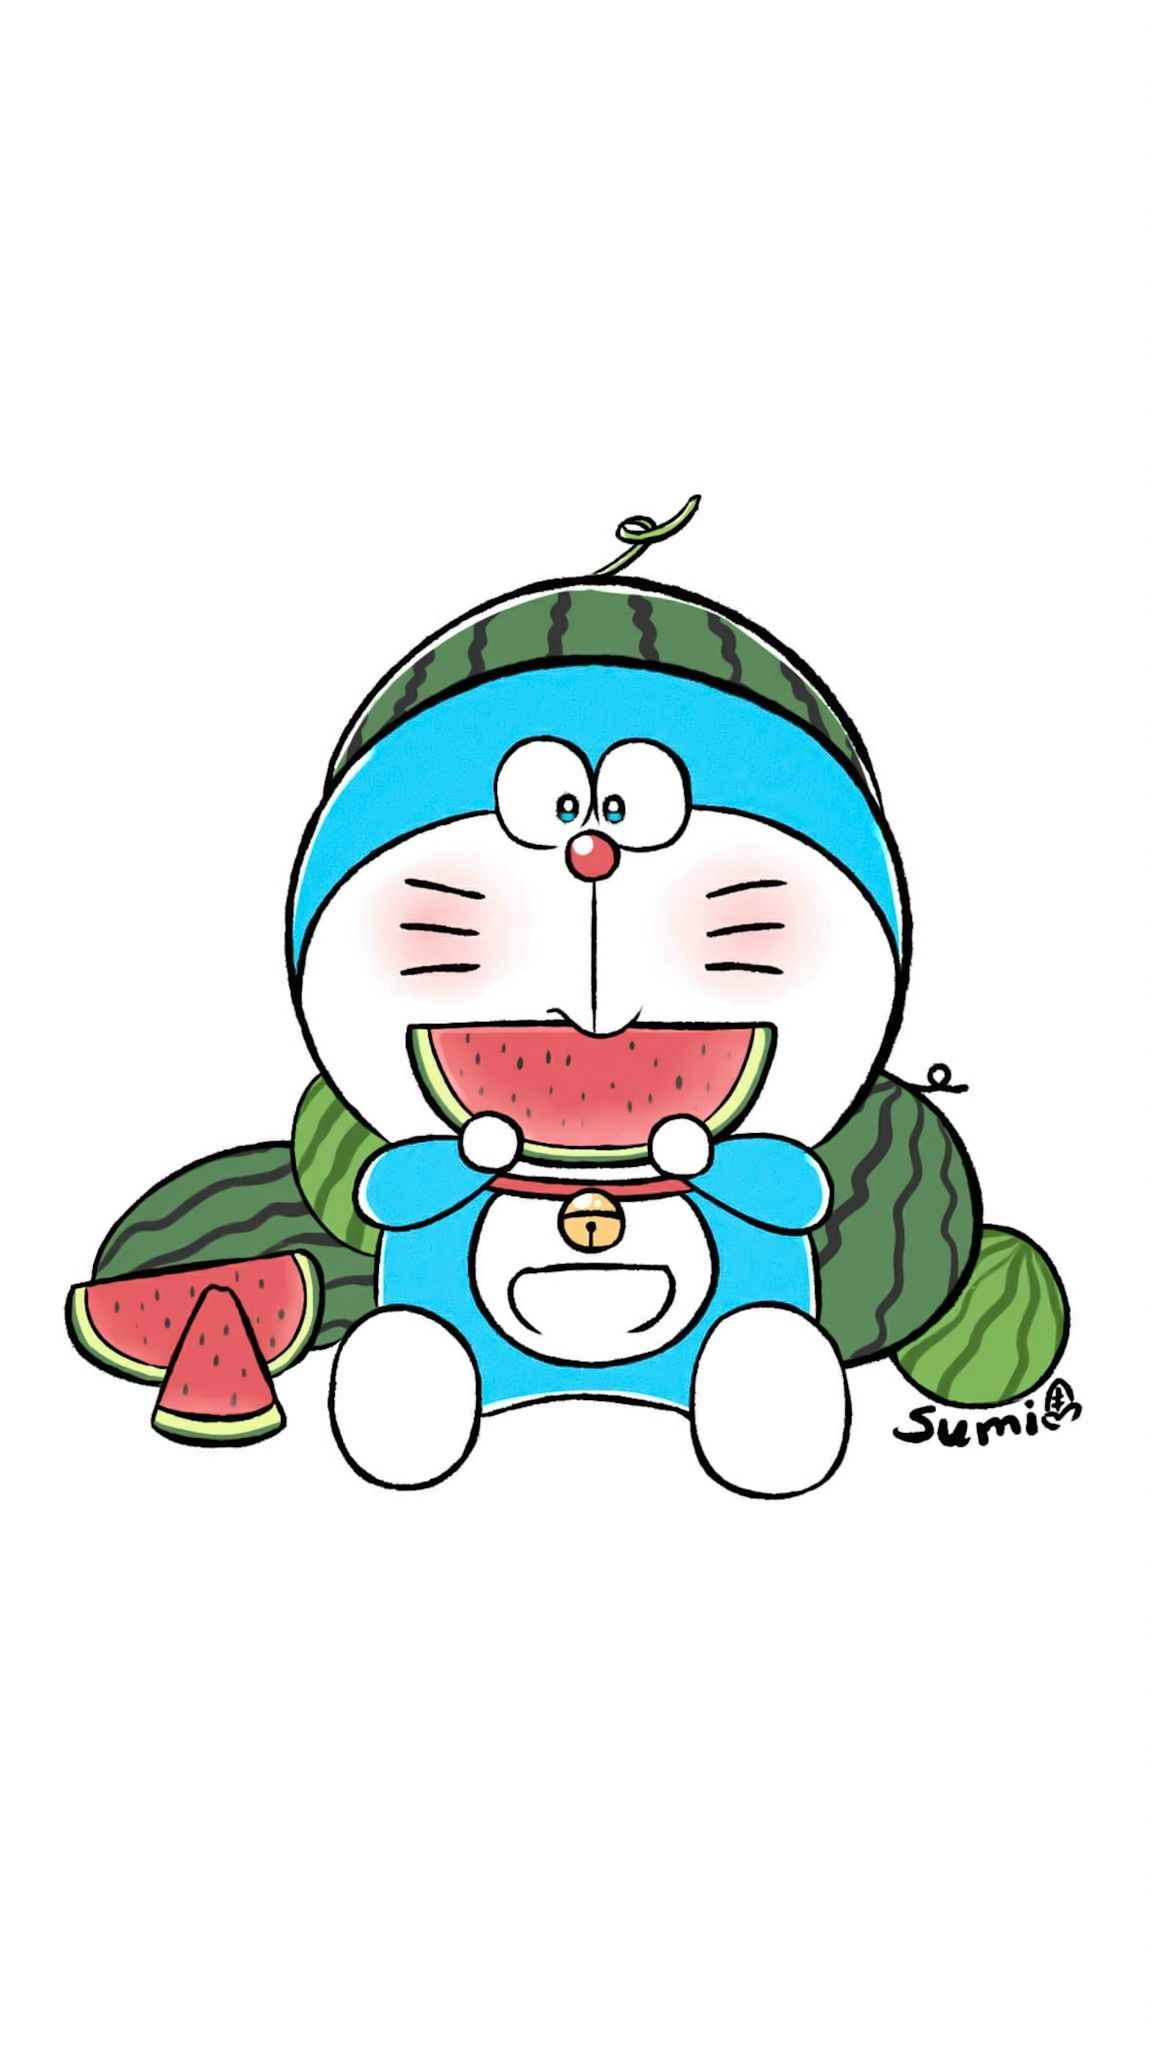 Hình ảnh Doraemon là một thể loại hình ảnh được rất nhiều người ưa thích và thường tìm kiếm. Khám phá các bộ sưu tập tuyệt vời về chú mèo máy Doraemon tại đây. Chắc chắn bạn sẽ rất thích thú.